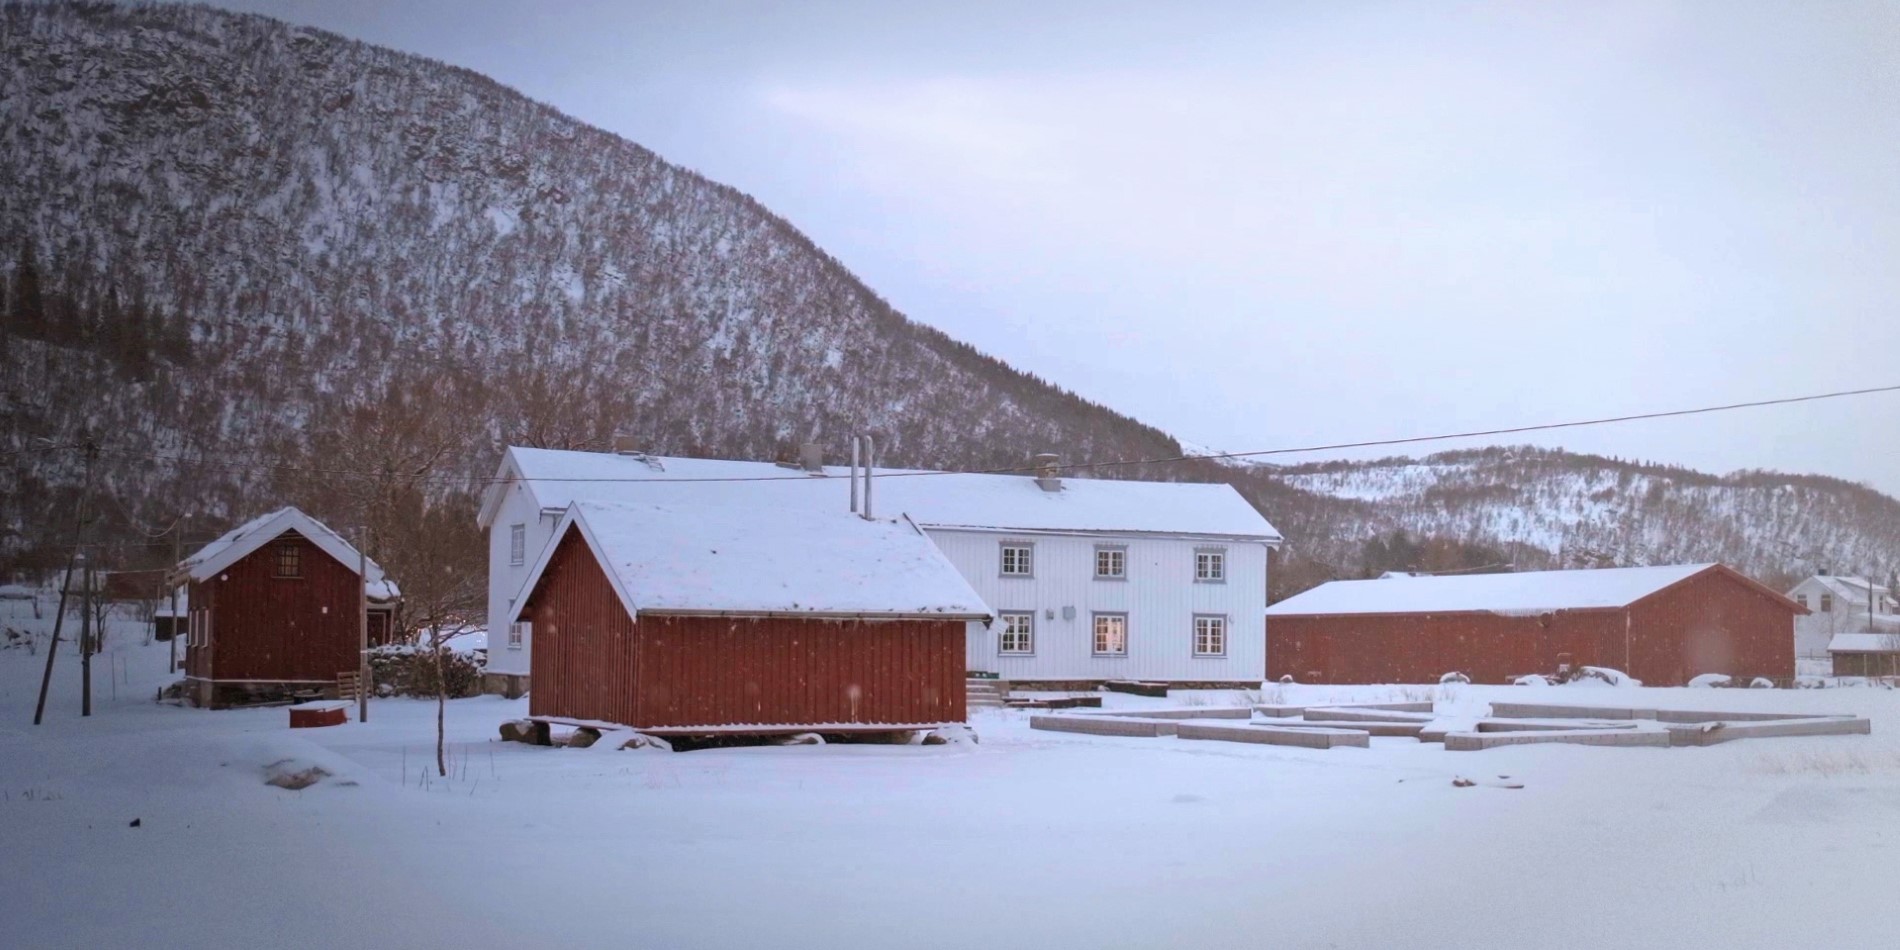 Kvitnes Farm. Red and white farm houses in Winter